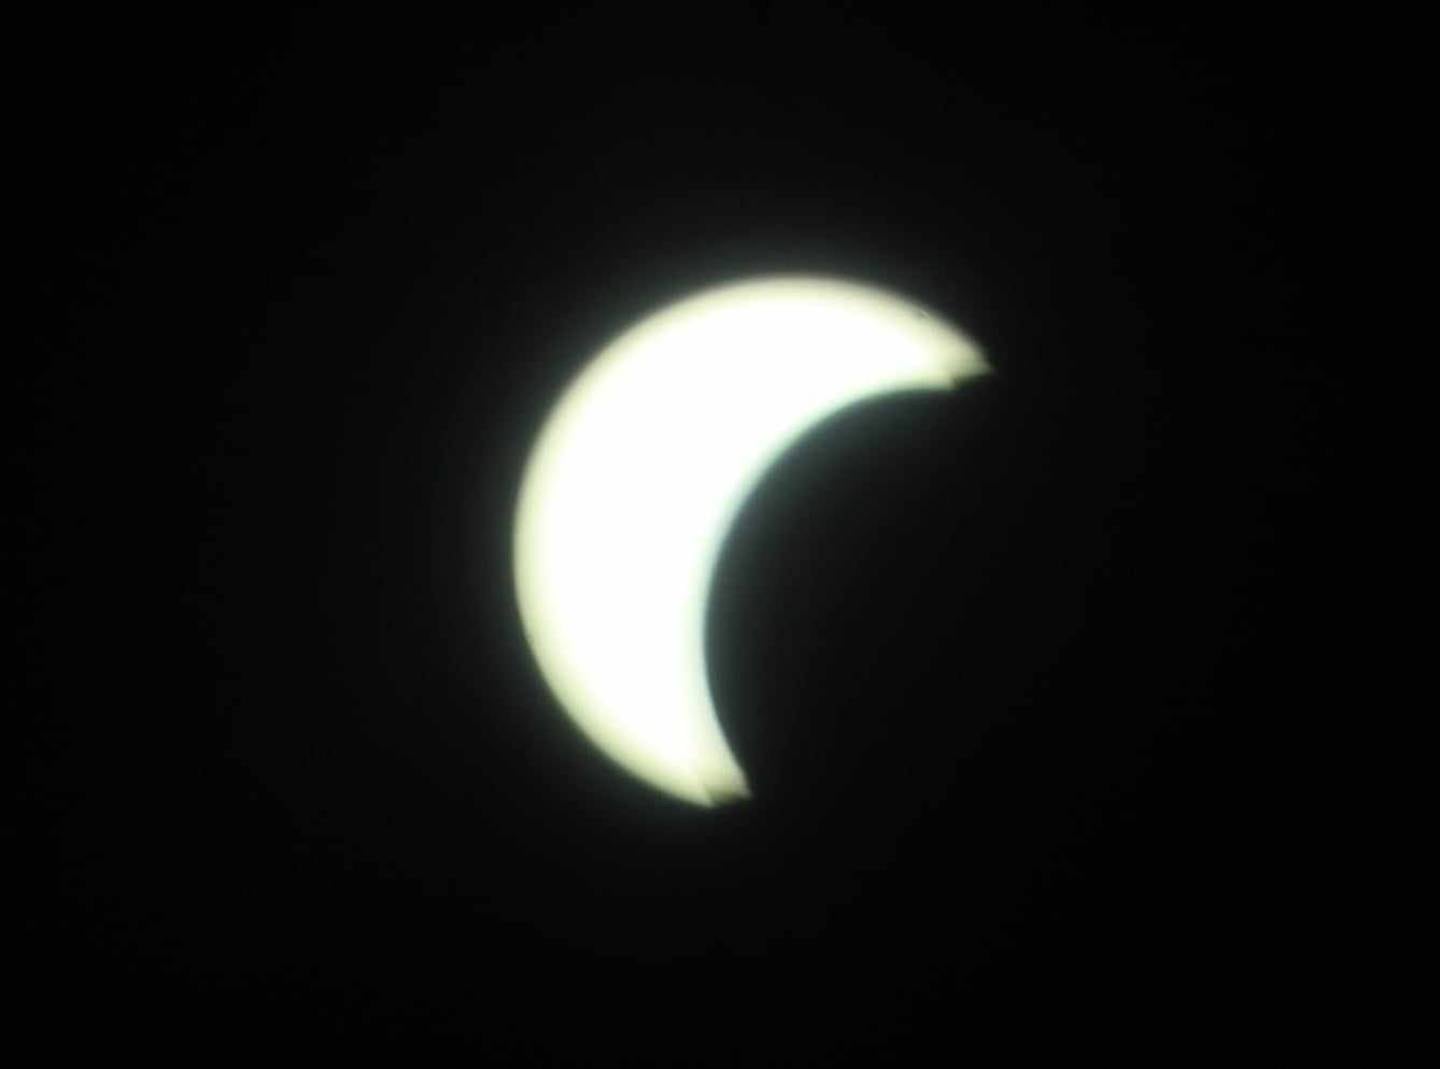 Eclipse solar se acerca a su punto máximo de ensombrecimiento / Julián Ortega